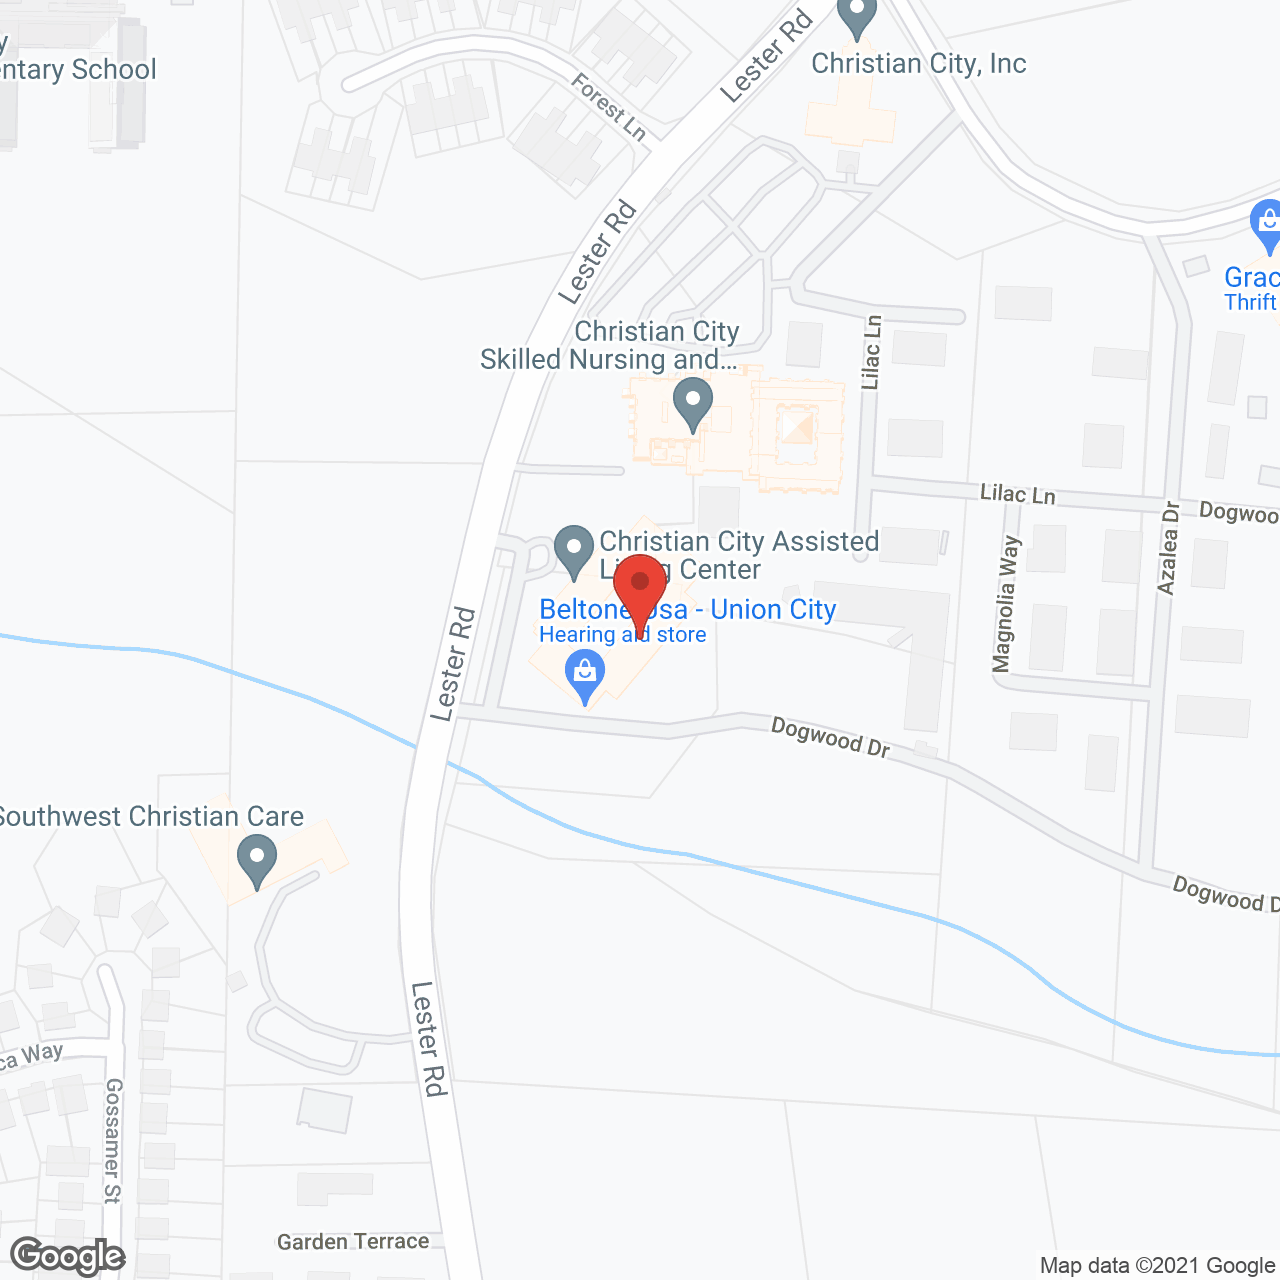 Sparks Inn in google map